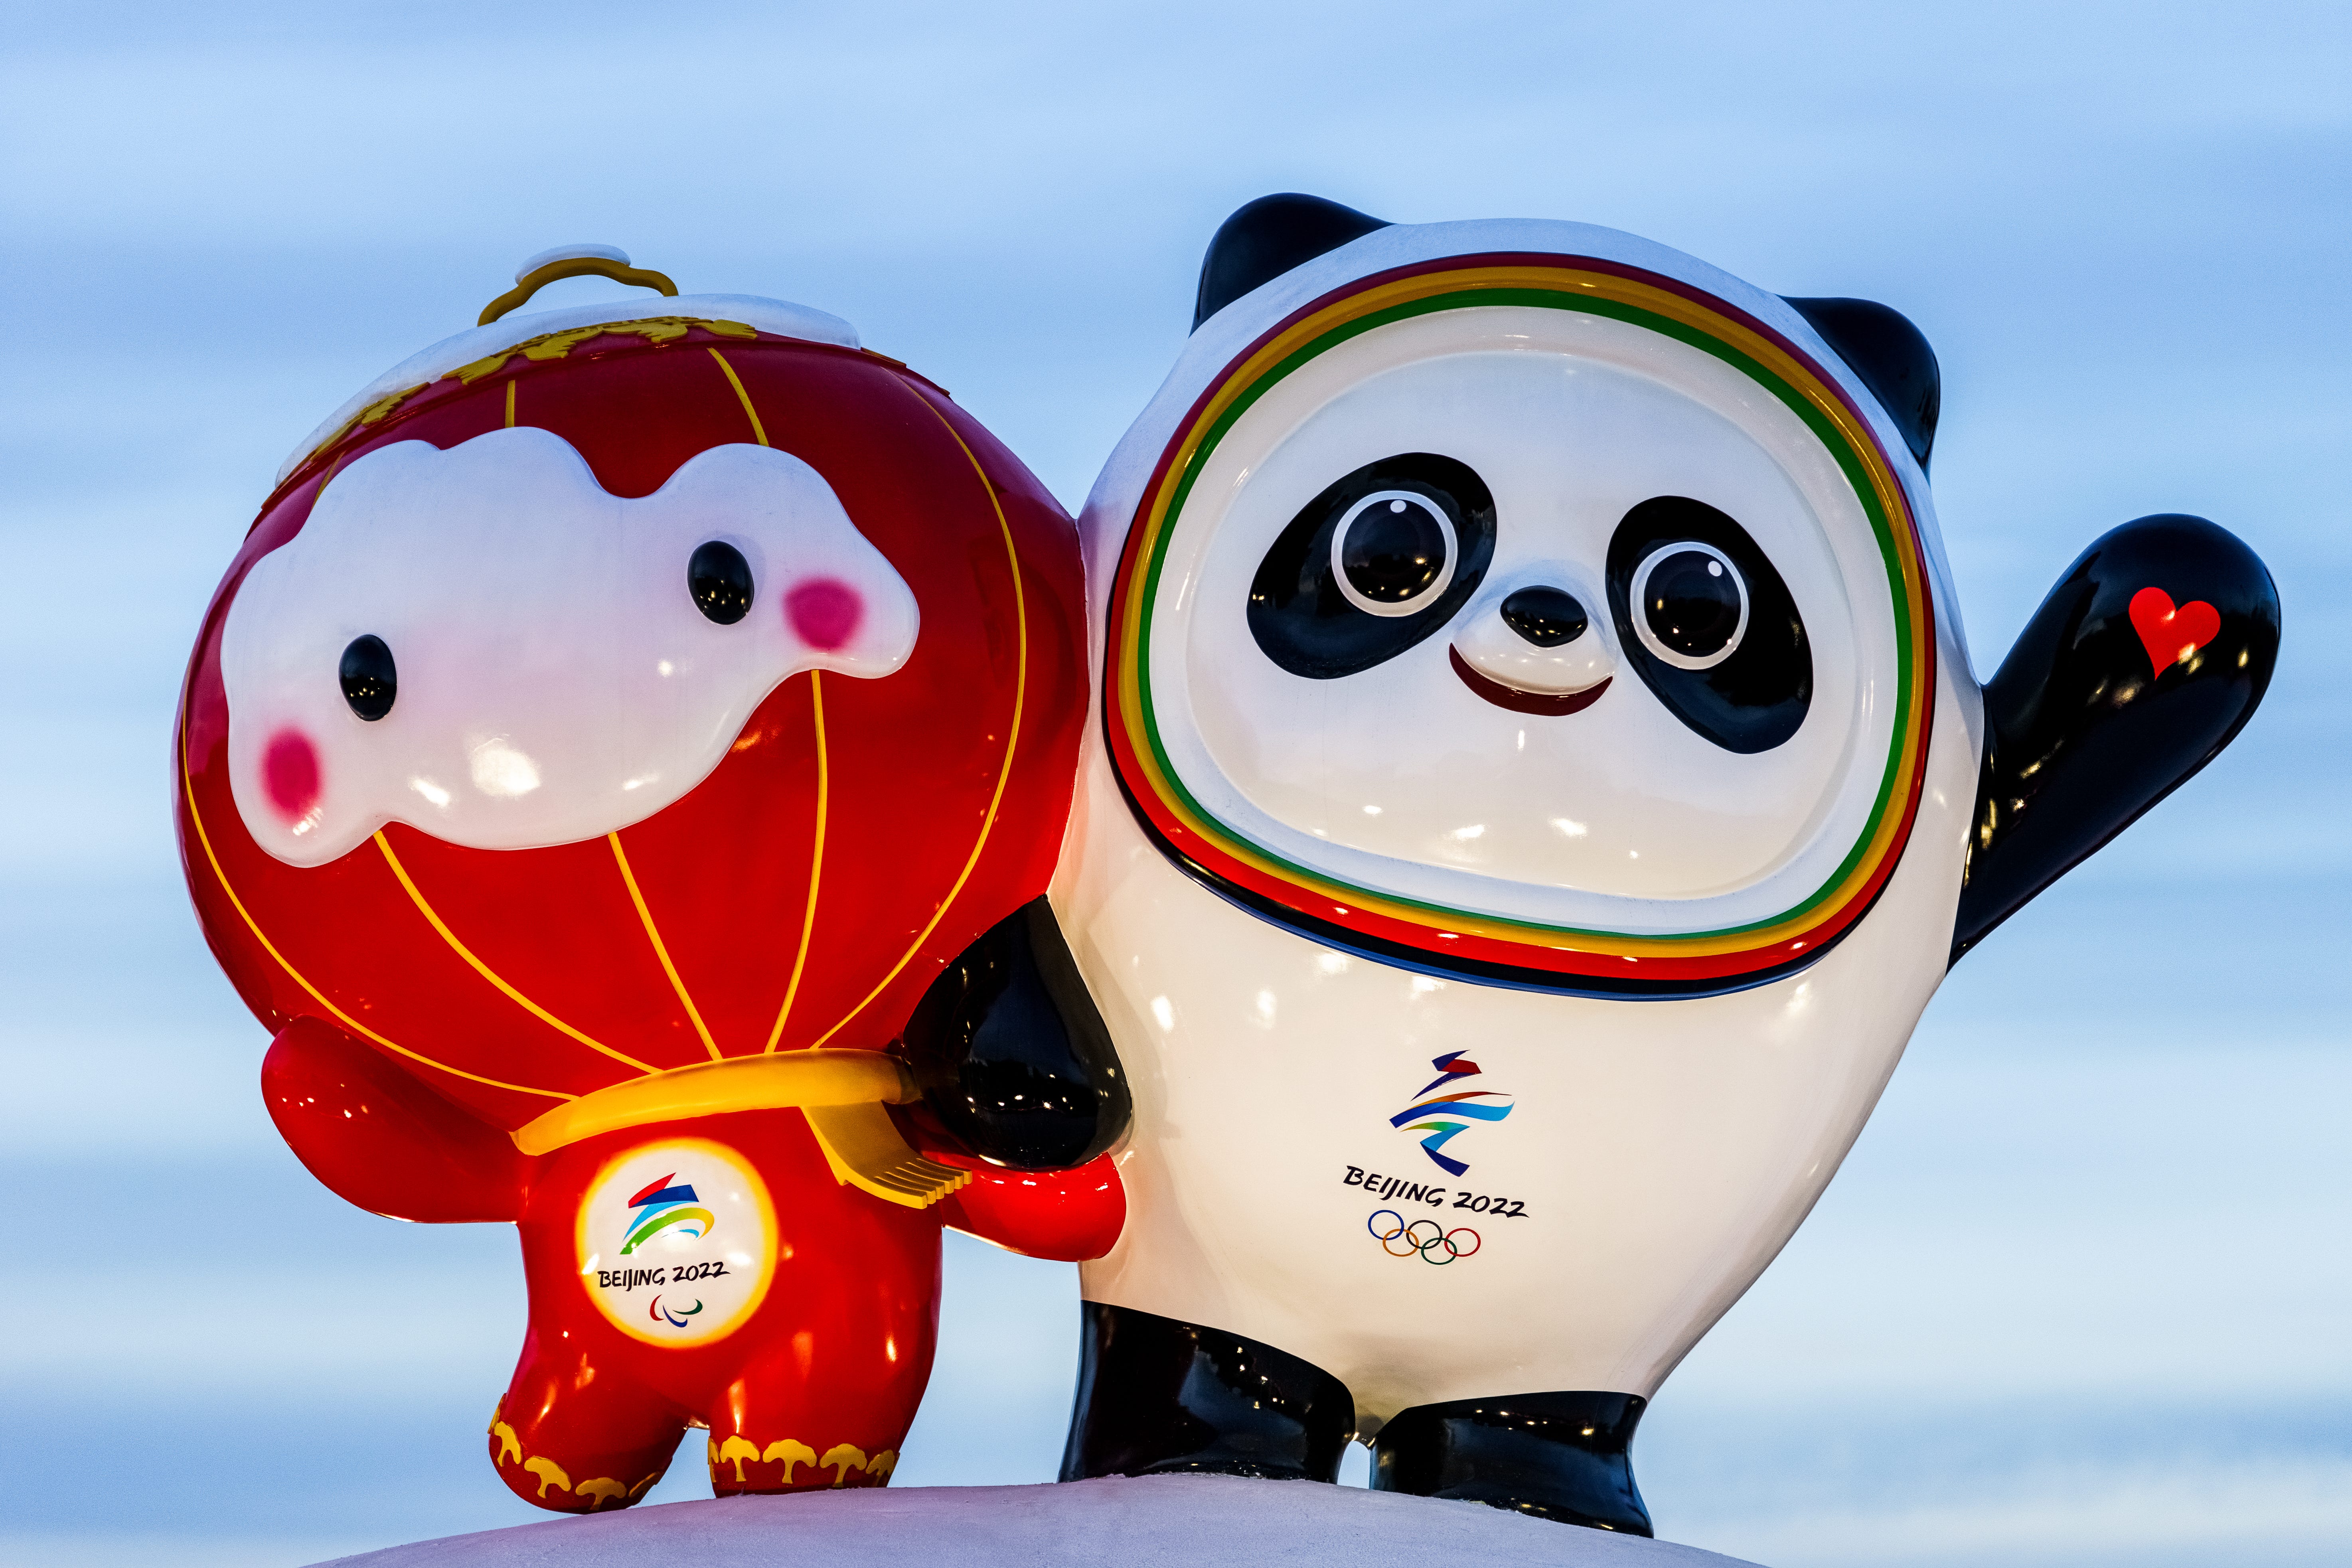 ビンドゥンドゥン ぬいぐるみ 北京オリンピック 2022 マスコット 中国